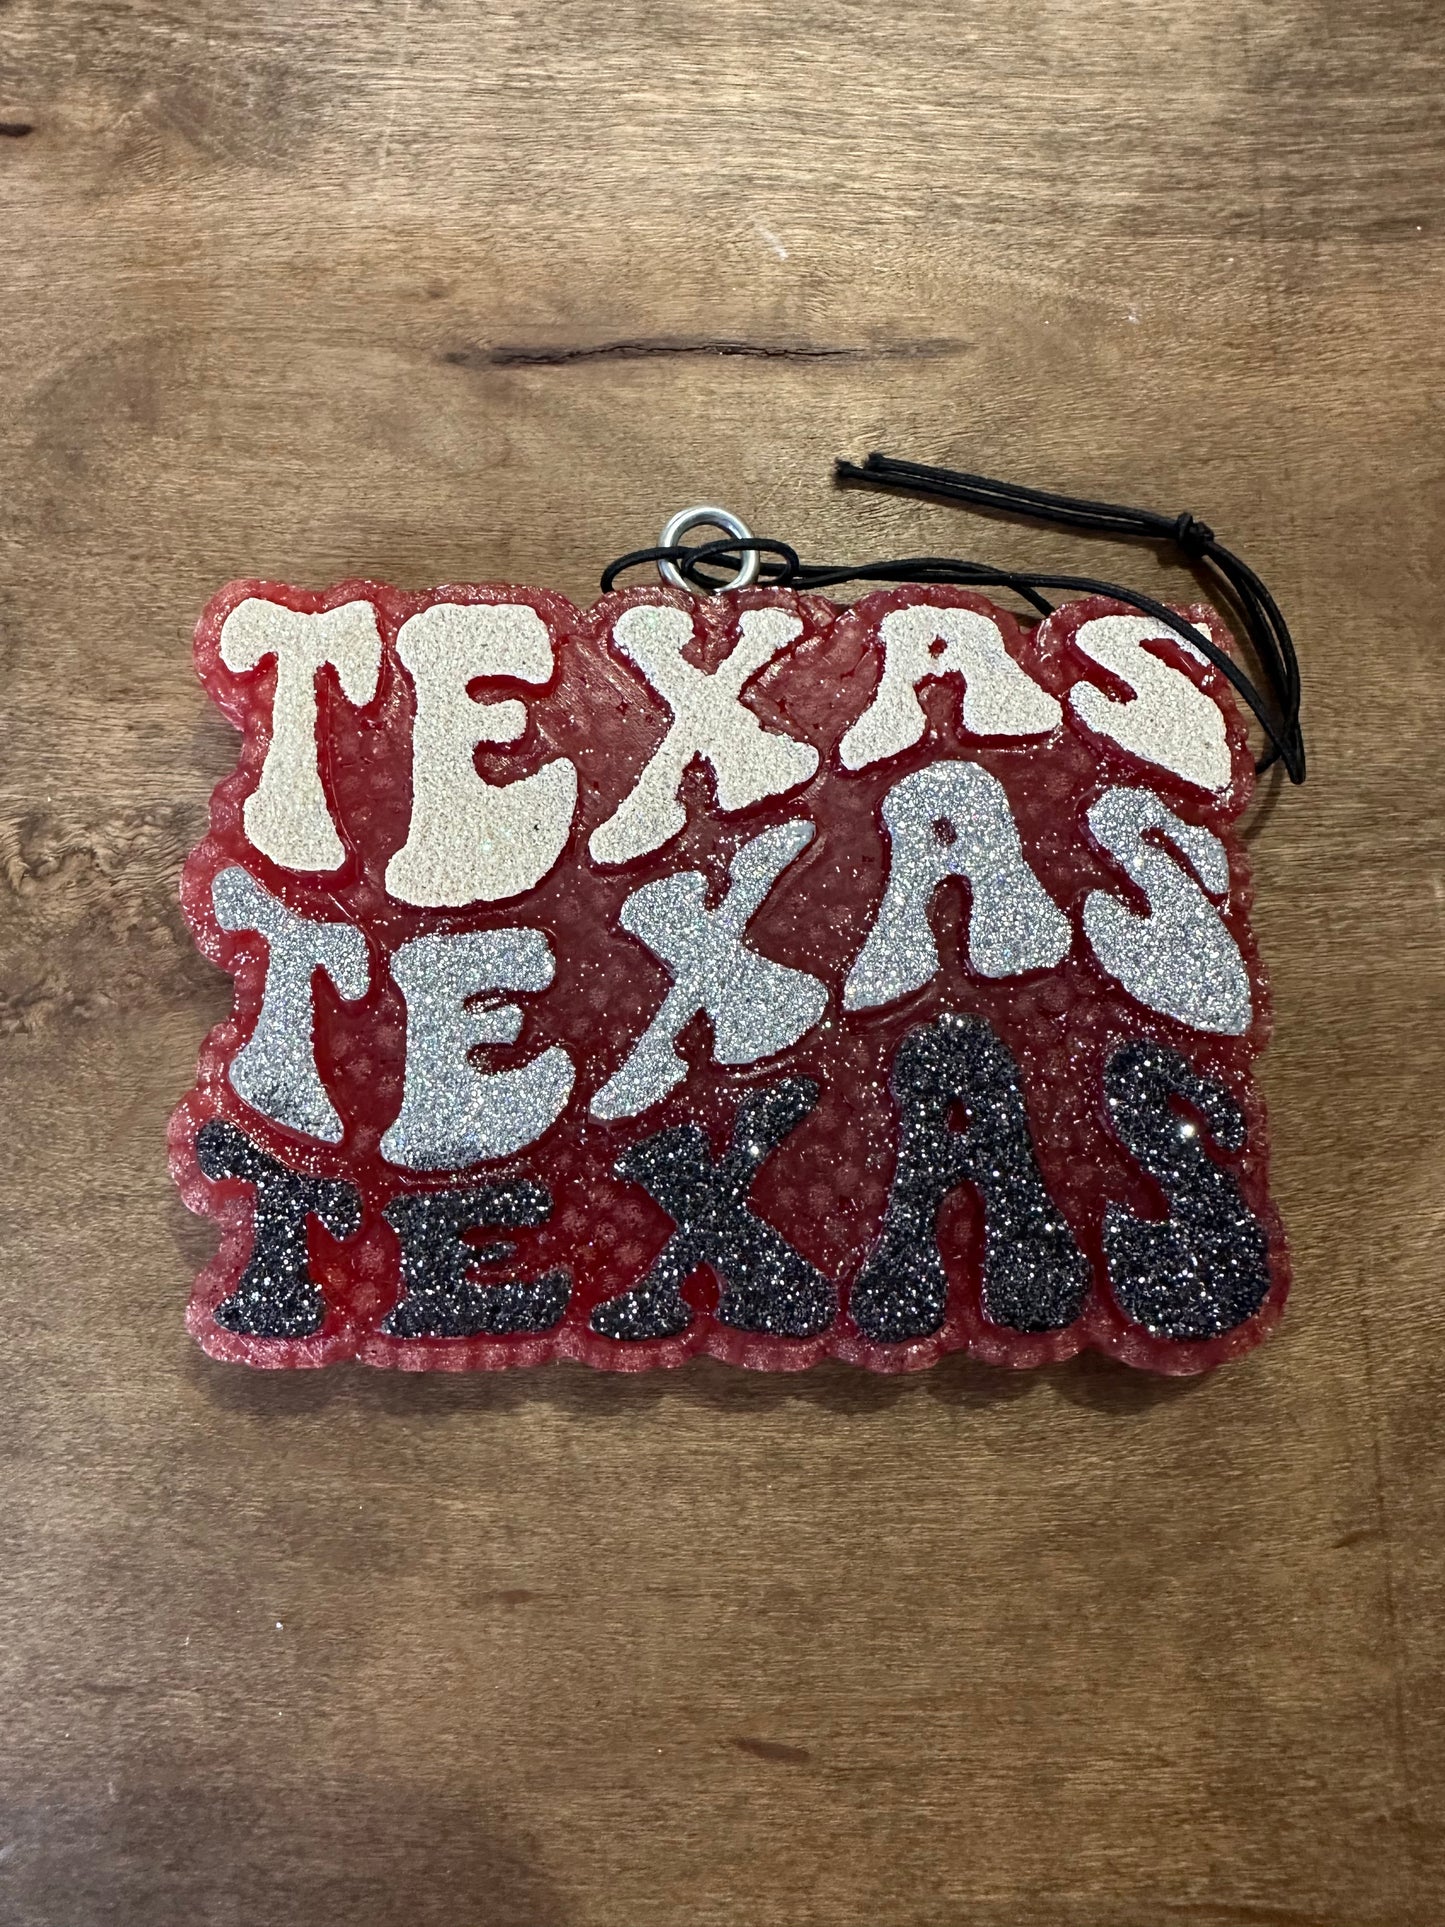 Texas Texas Texas Car Freshie